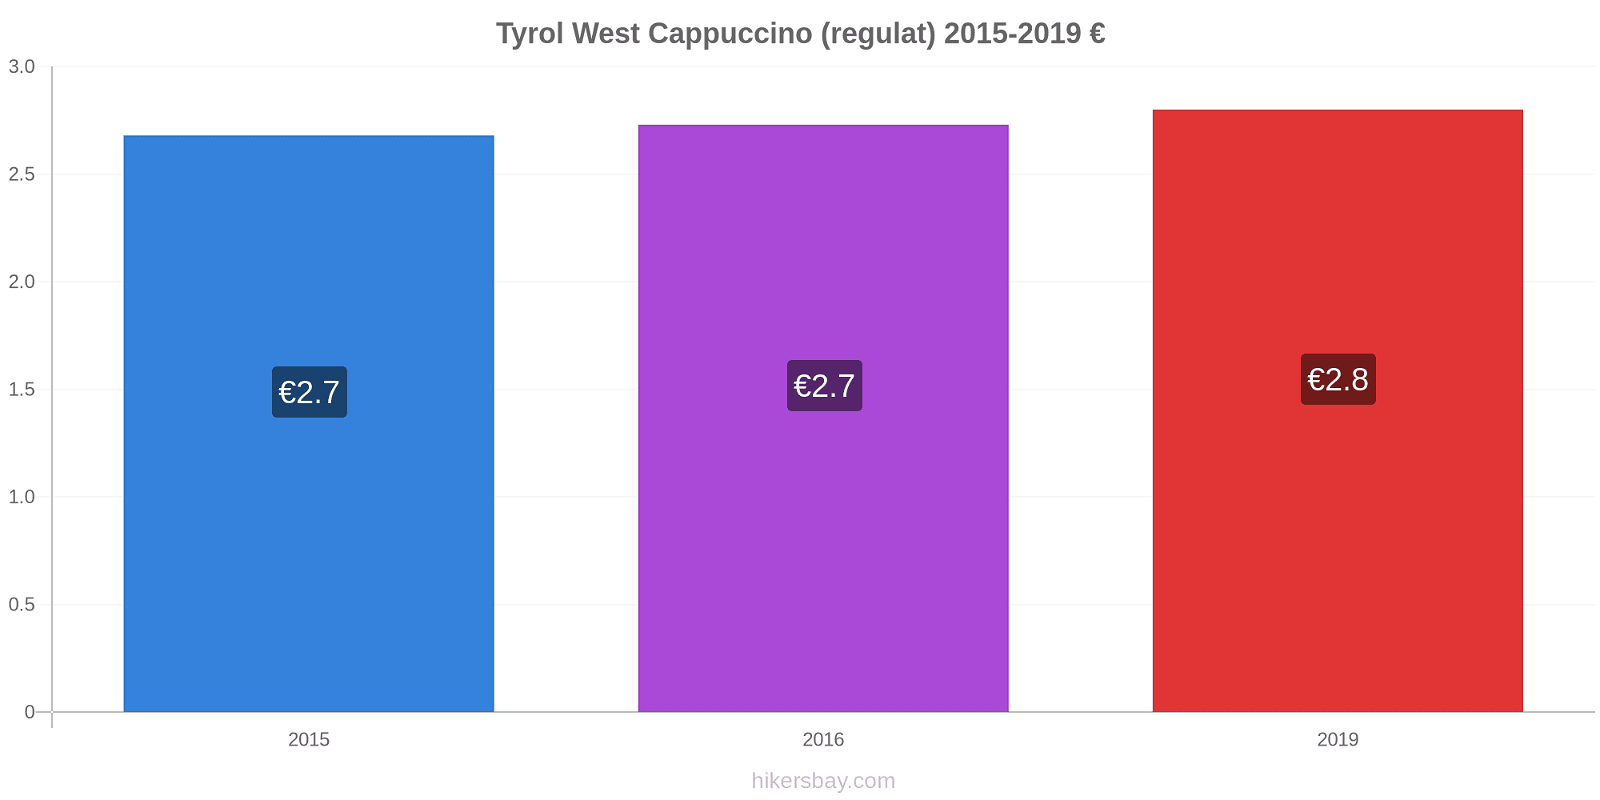 Tyrol West modificări de preț Cappuccino (regulat) hikersbay.com